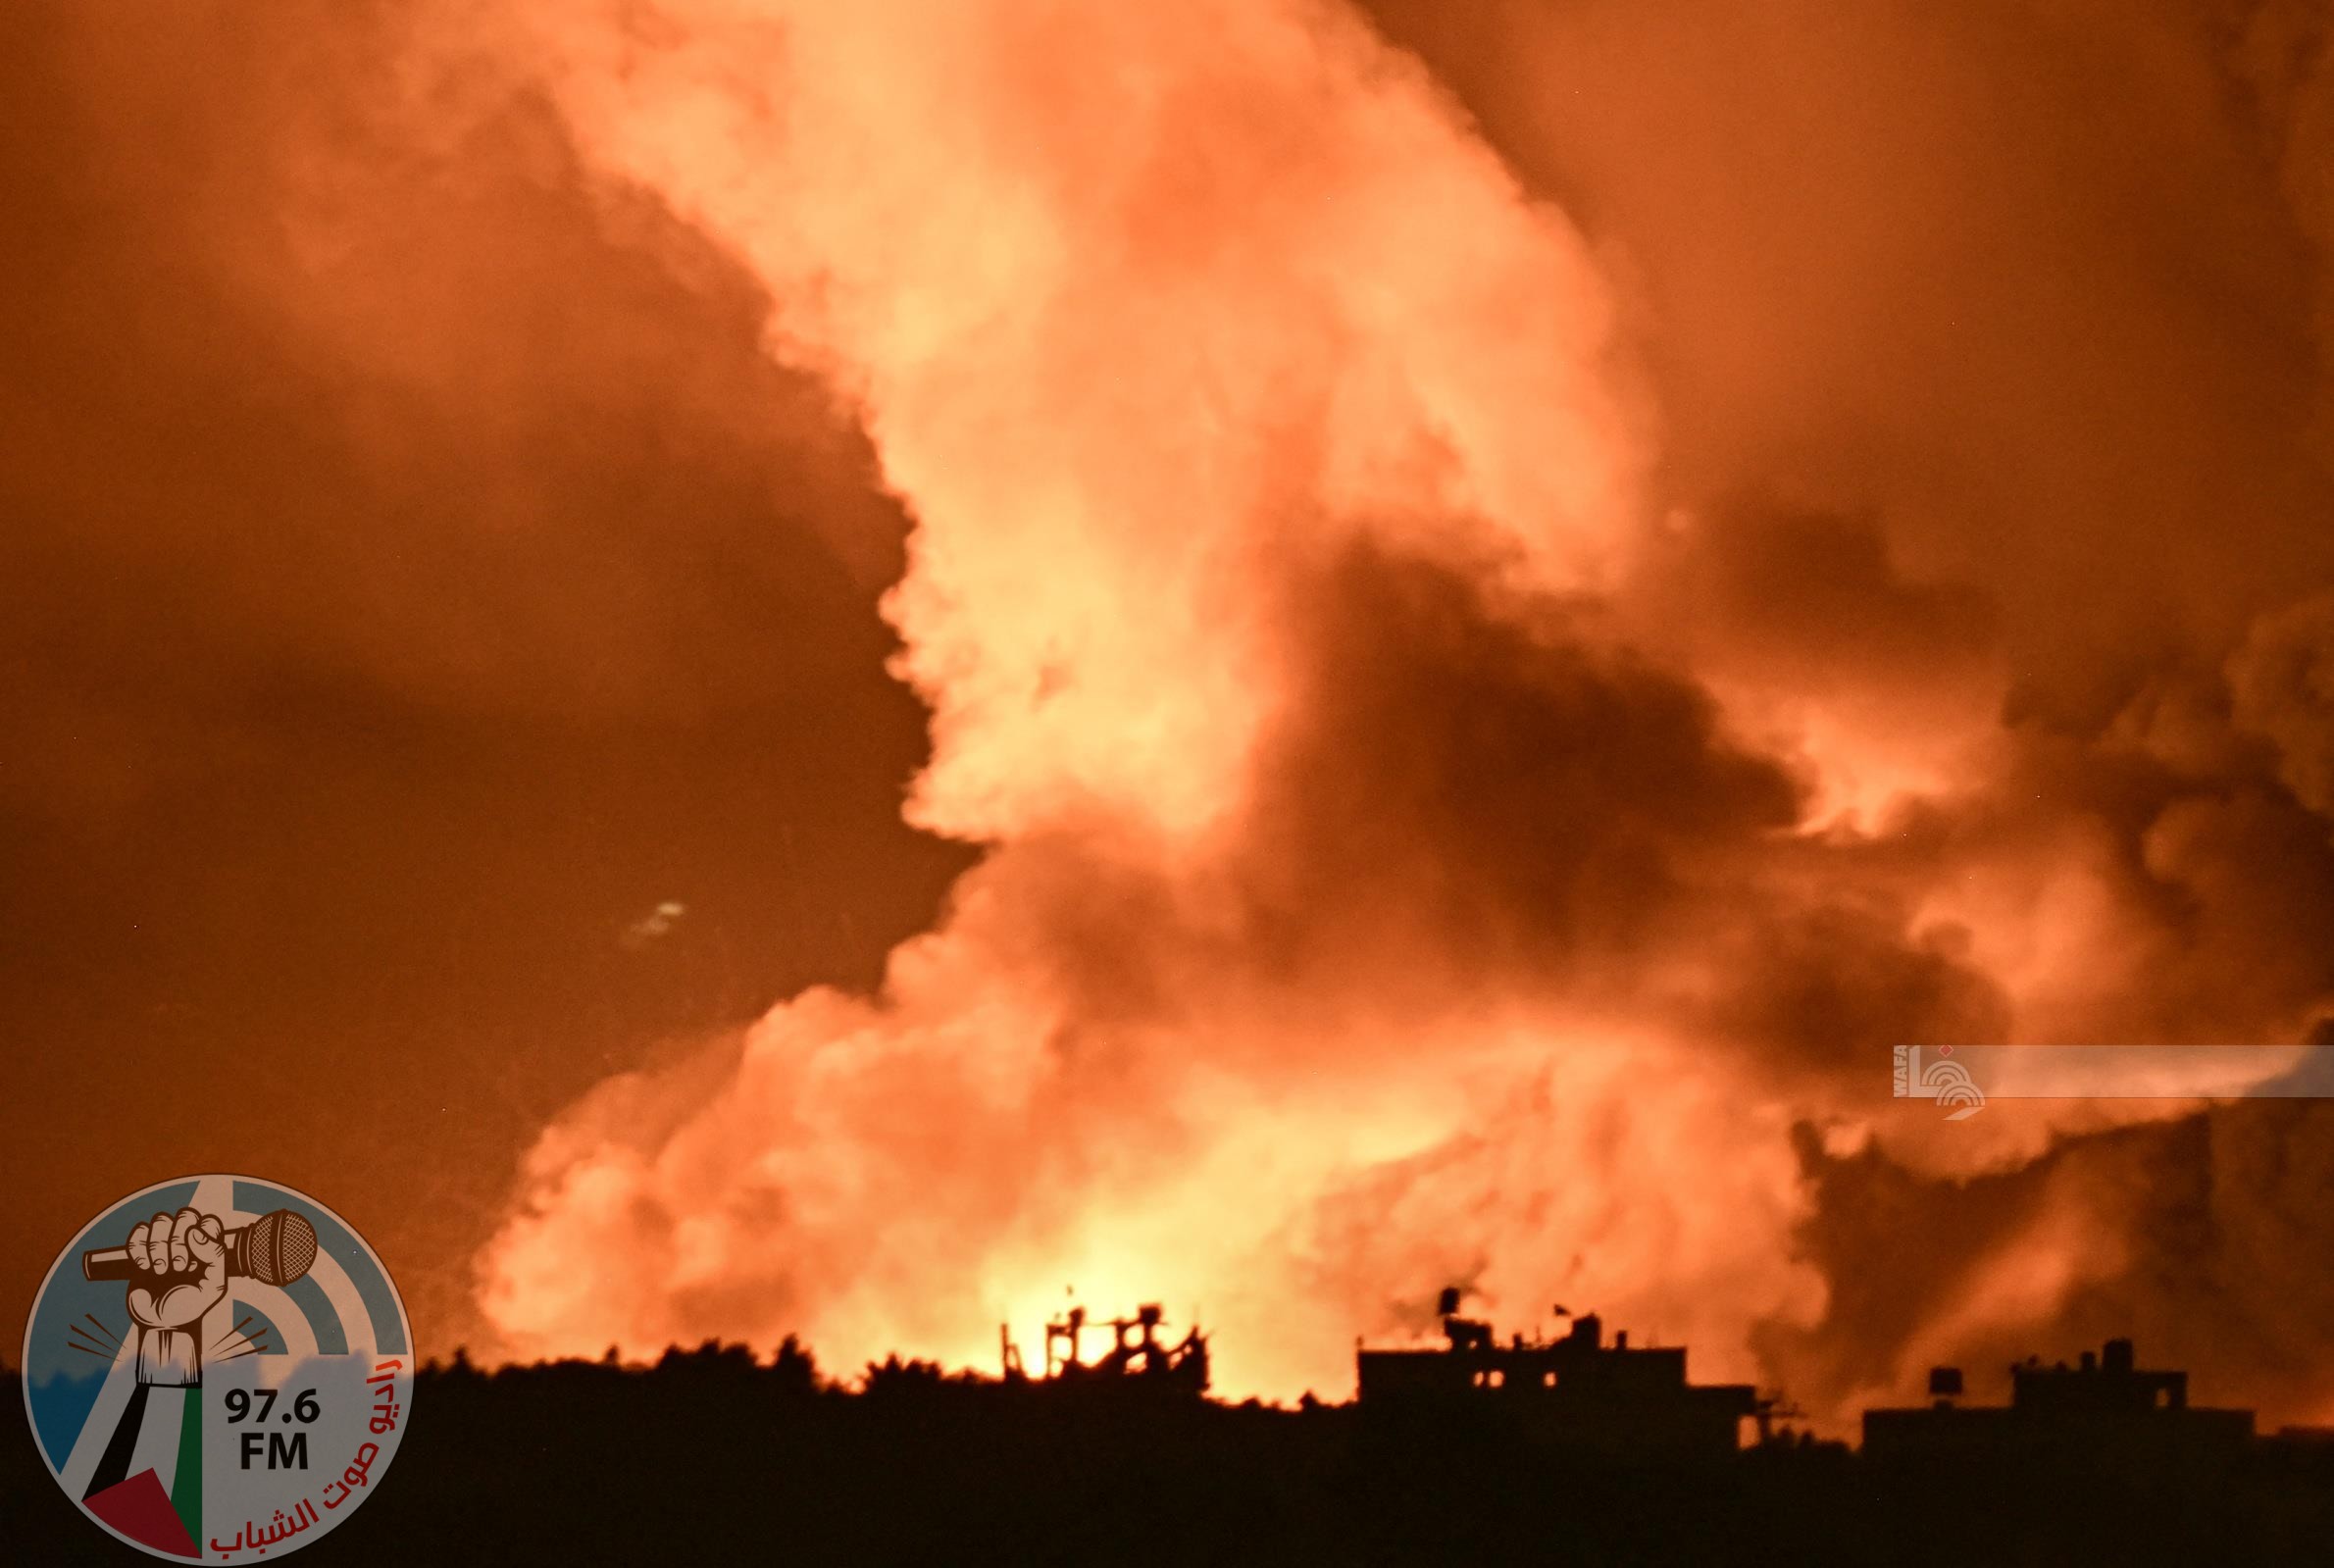 27 شهيدا معظمهم من النازحين في قصف على مخيم النصيرات وسط قطاع غزة